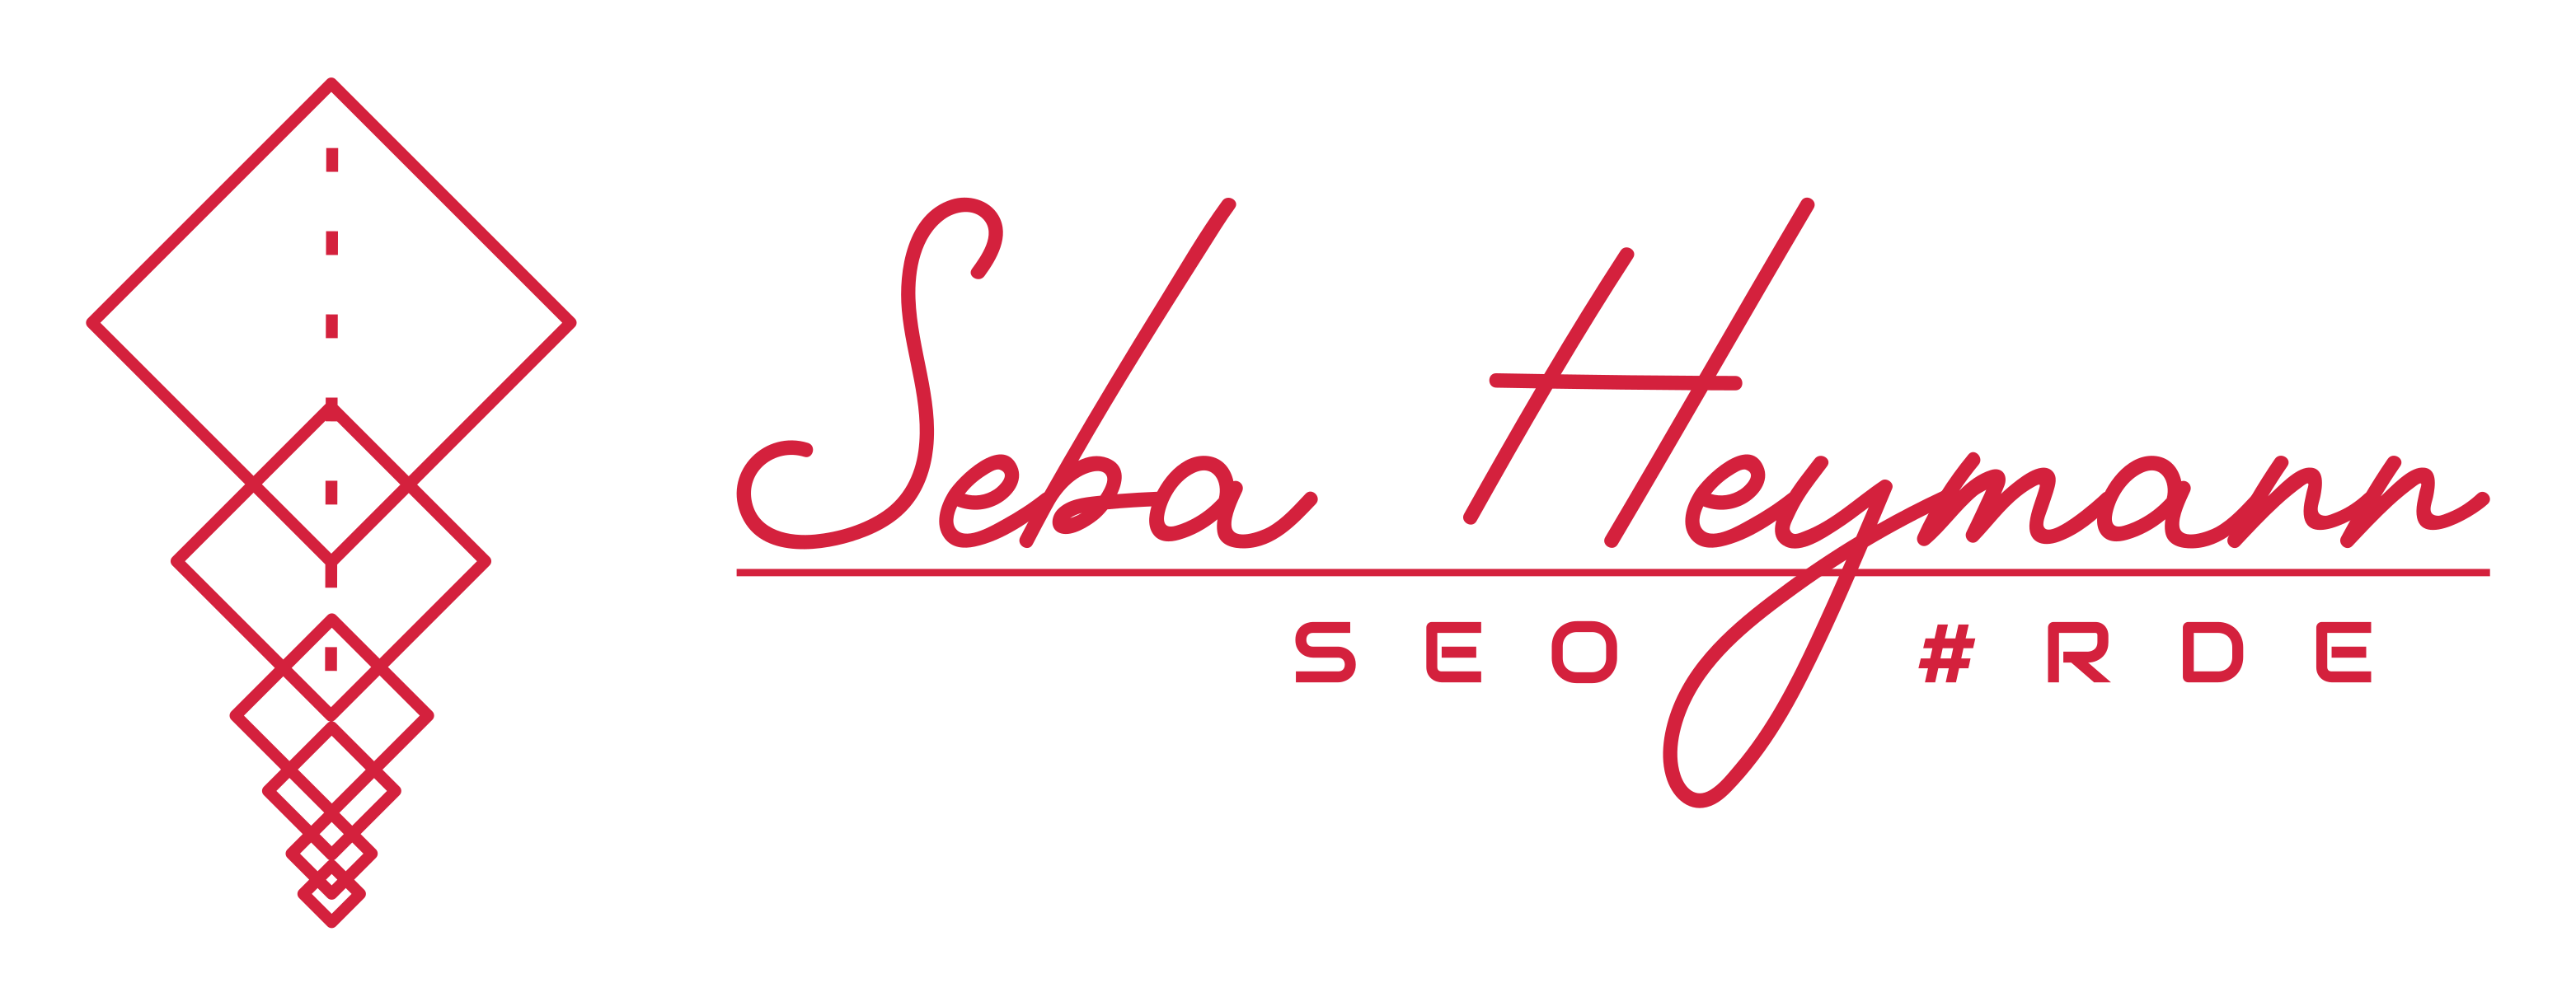 Seba Heymann Blog Logo